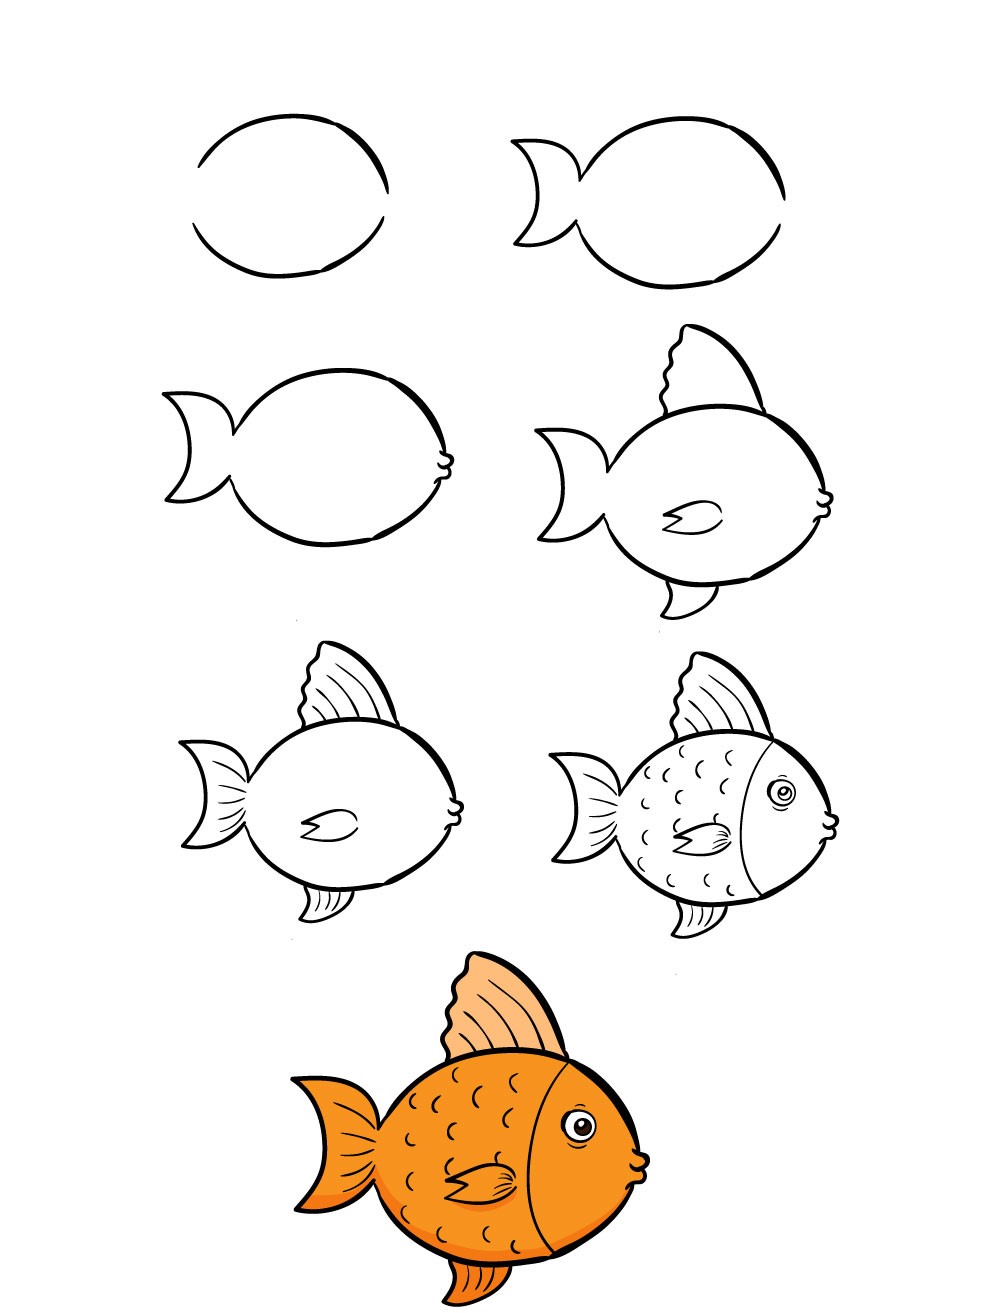 Vẽ cá dễ dàng cho bé giúp trẻ trở nên tự tin và hứng thú hơn trong học tập. Cùng xem các bức tranh vẽ cá dễ thương và đơn giản để bạn và con đều có thể thực hiện một cách dễ dàng. Hãy bắt đầu ngay hôm nay!